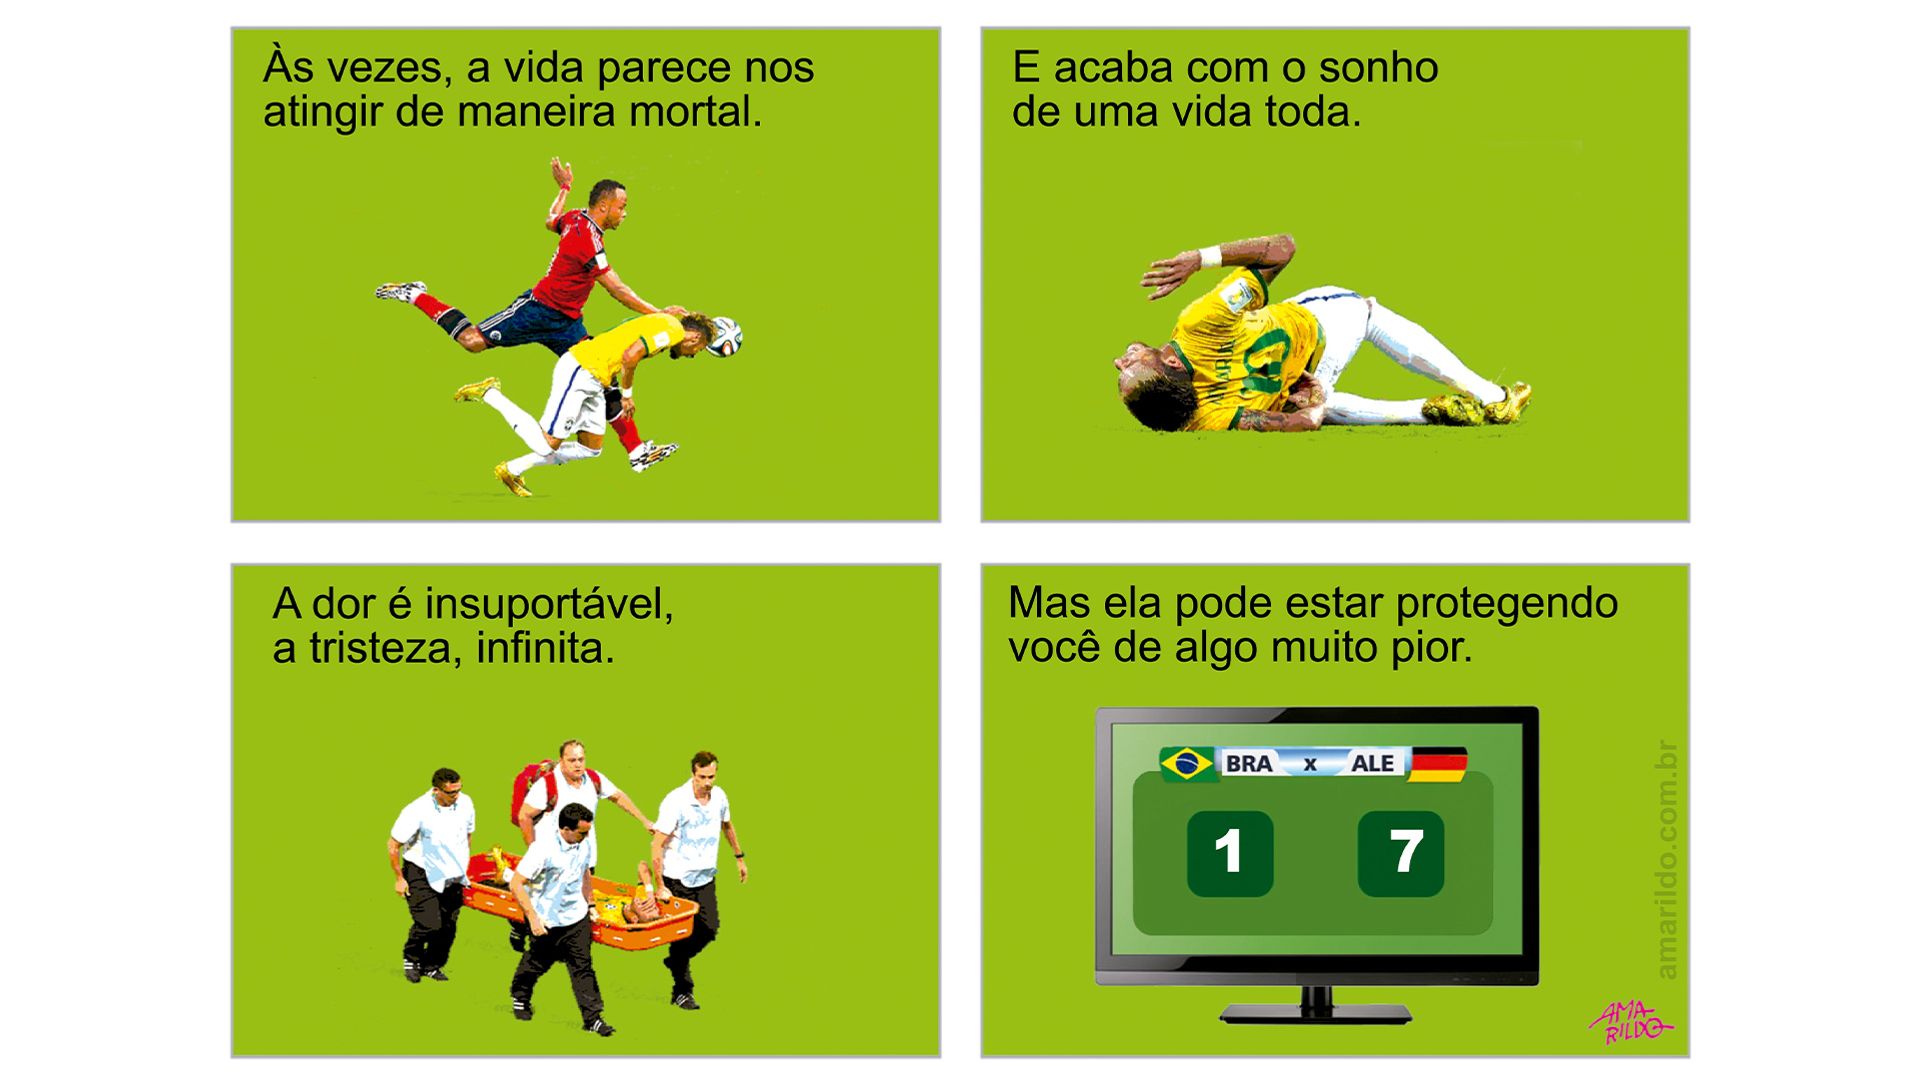 Quadrinhos que retratam a lesão do jogador da seleção Neymar, na Copa do Mundo 2014
